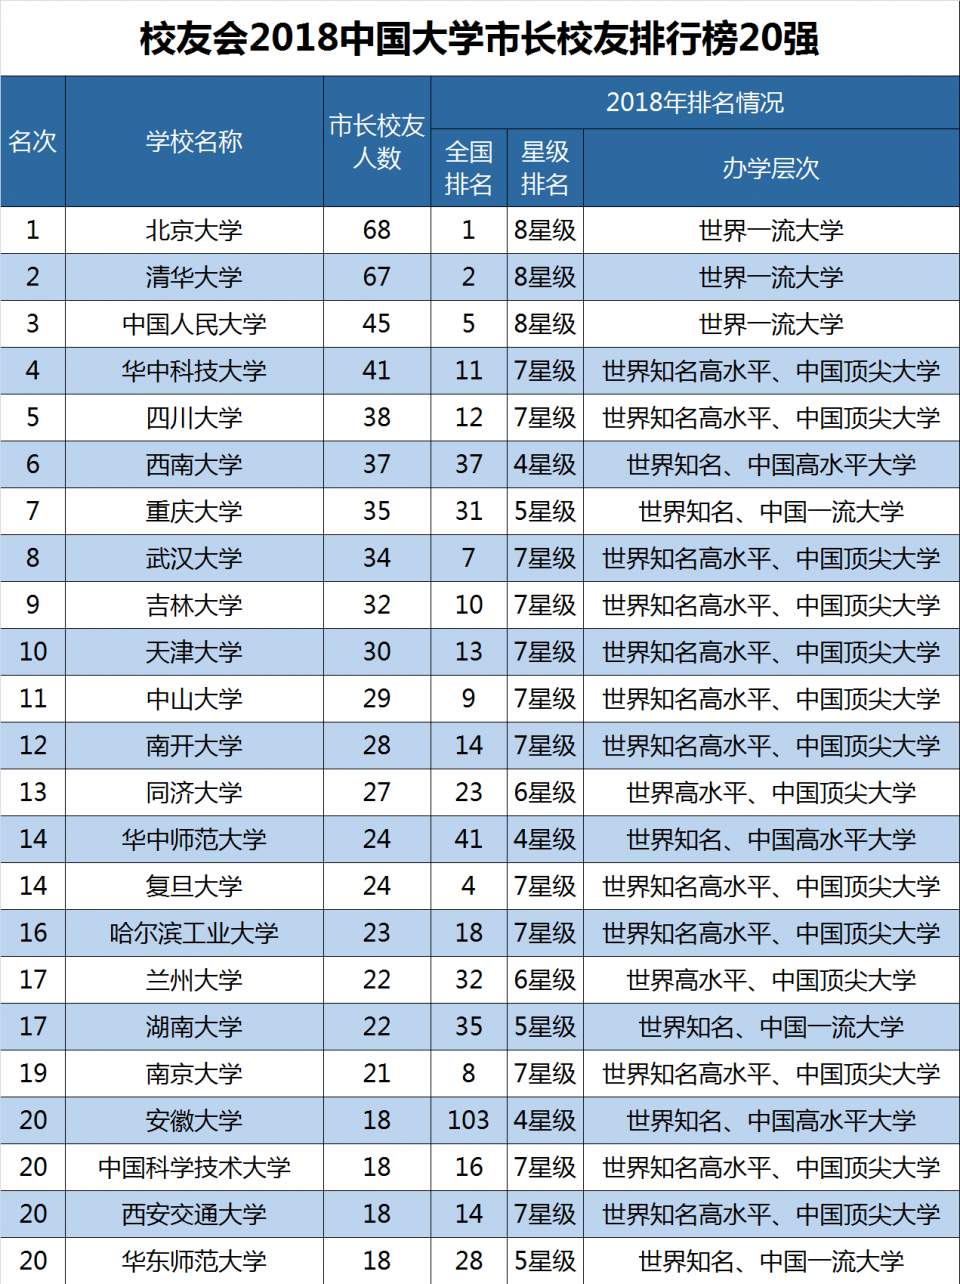 2018中国大学教学质量排行榜800强,北京大学